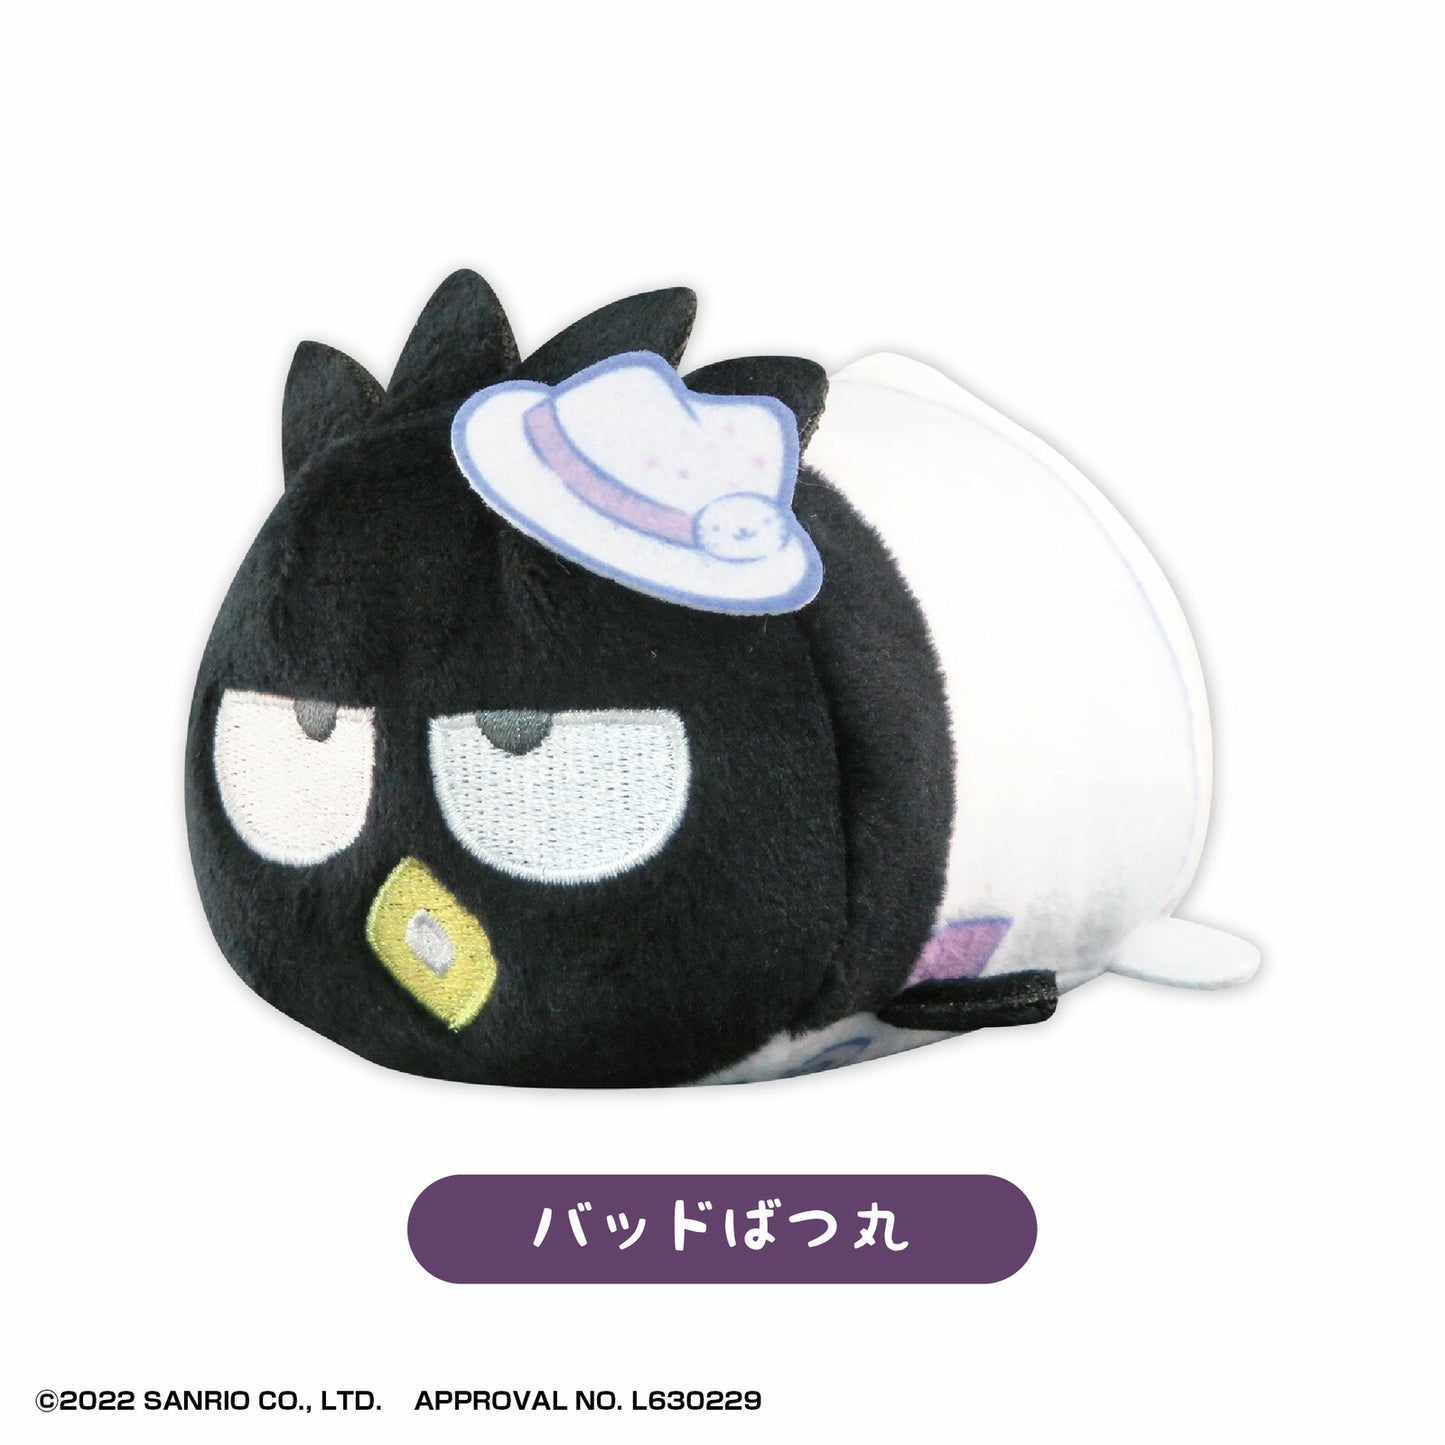  Sanrio Potekoro Mascot Set 